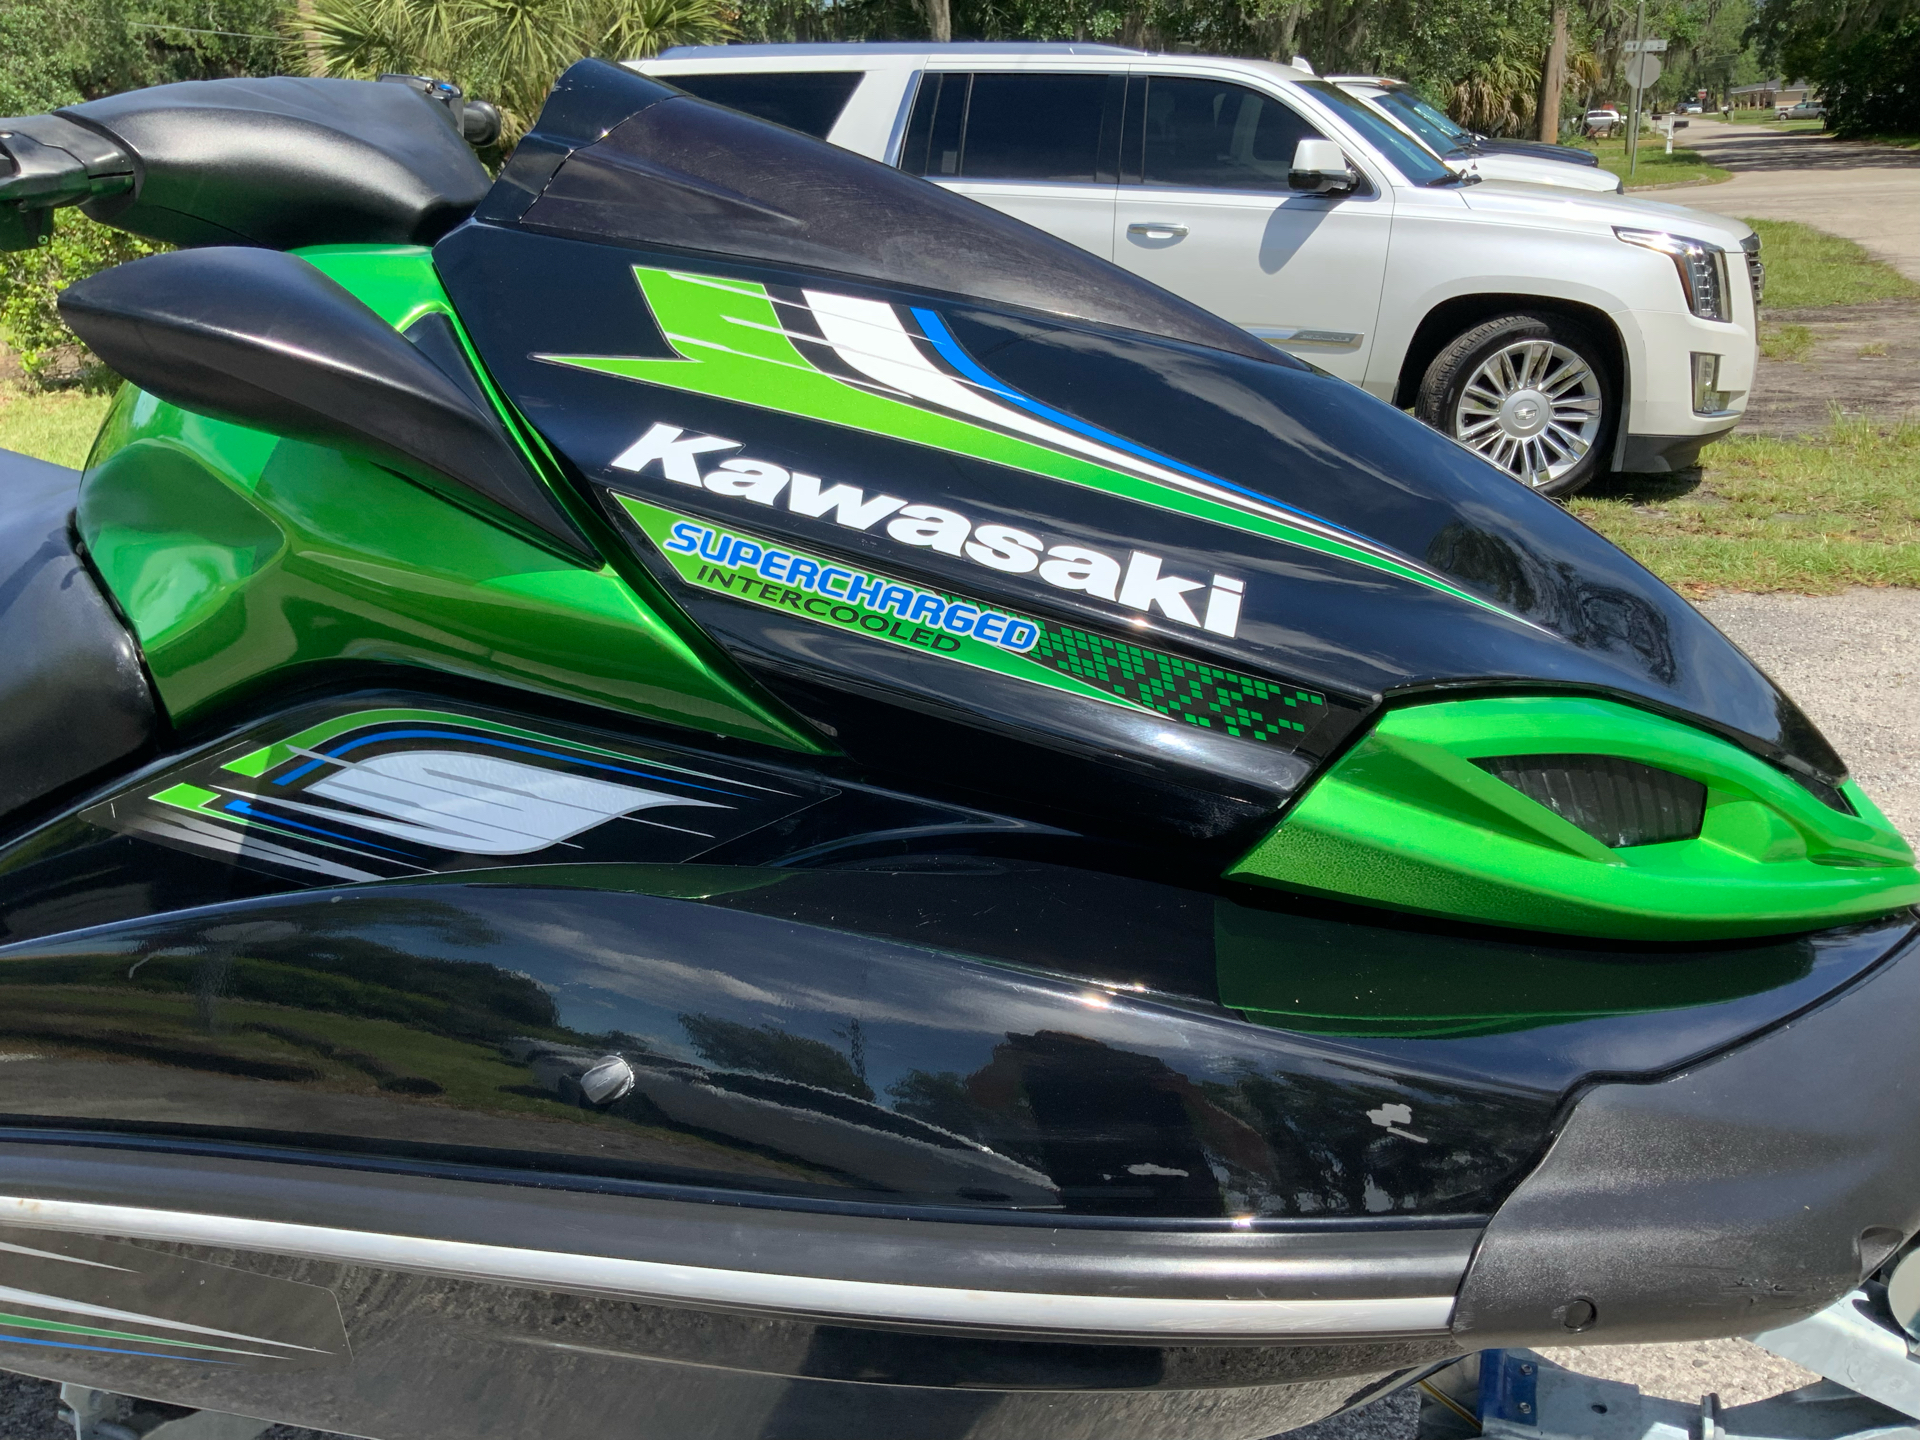 2013 Kawasaki Jet Ski® Ultra® 300X in Sanford, Florida - Photo 13